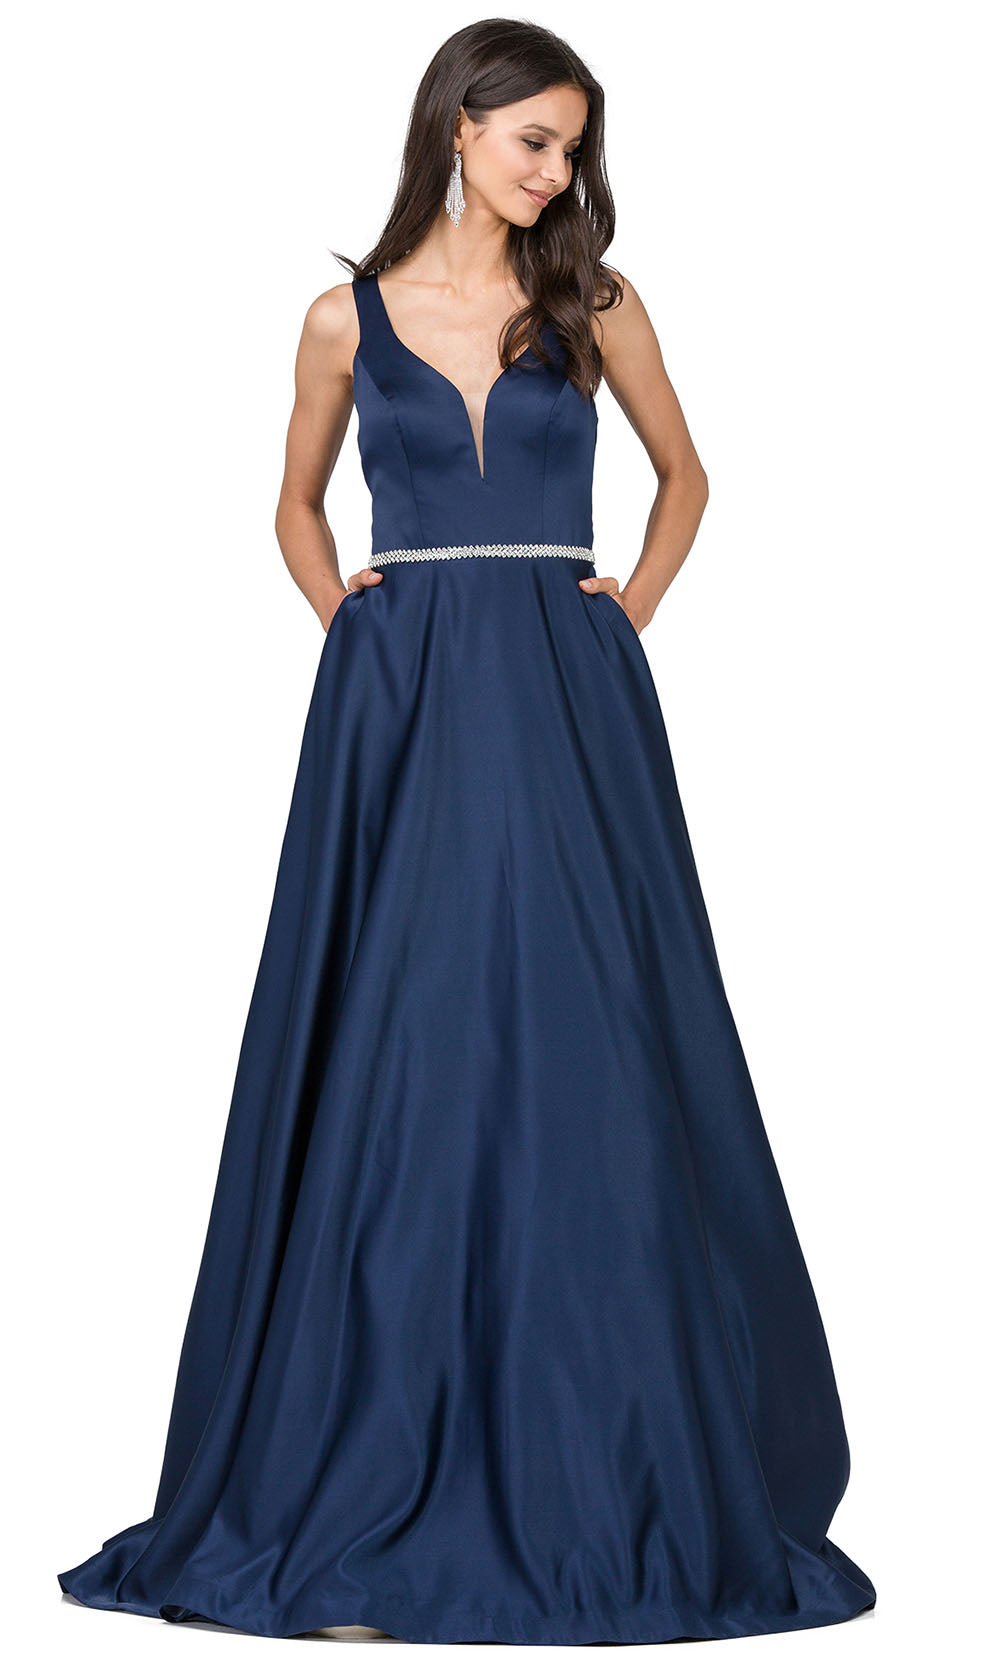 Dancing Queen - 9754 Sleeveless Jeweled Waist A-Line Dress In Blue